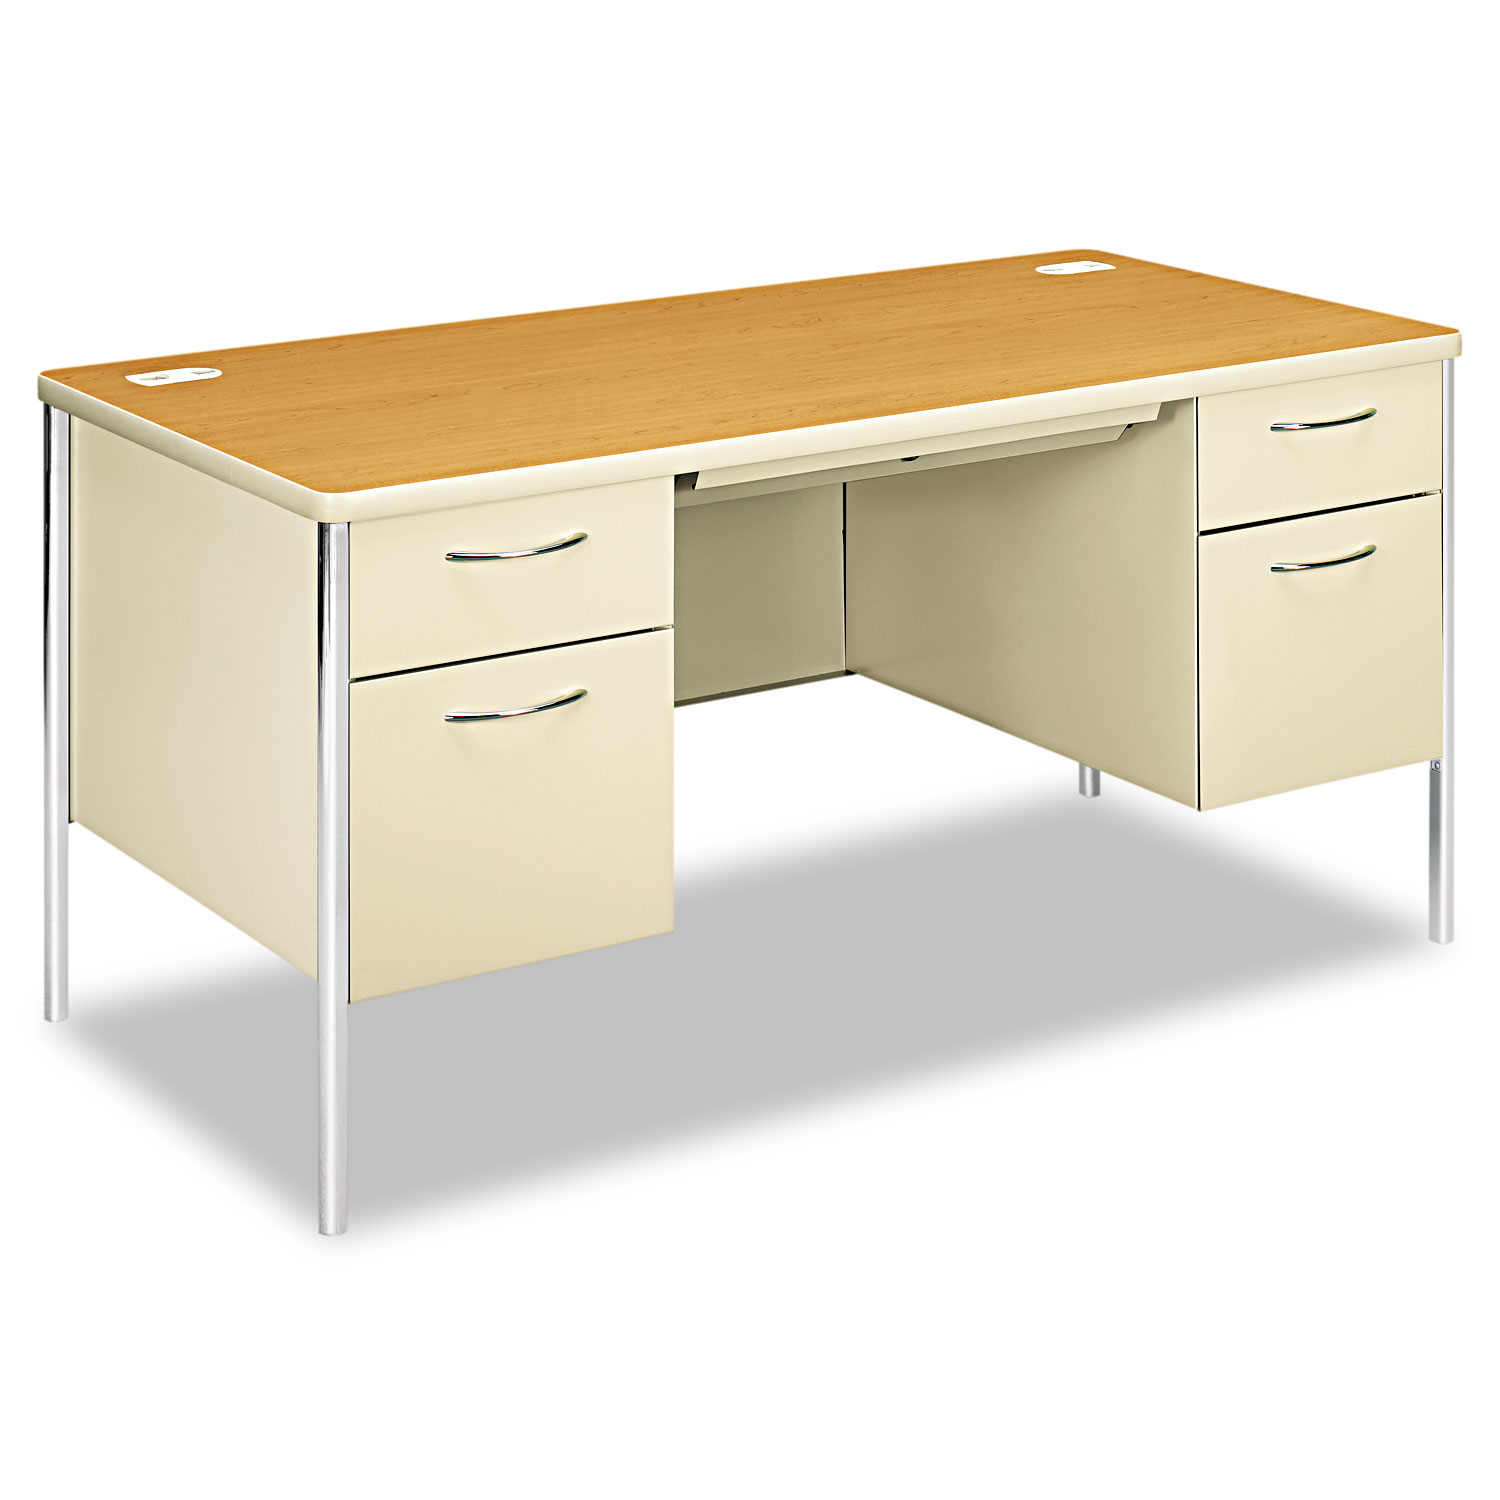  HON H88962.C.L Mentor Series Double Pedestal Desk, 60w x 30d x 29.5h, Harvest/Putty (HON88962CL) 